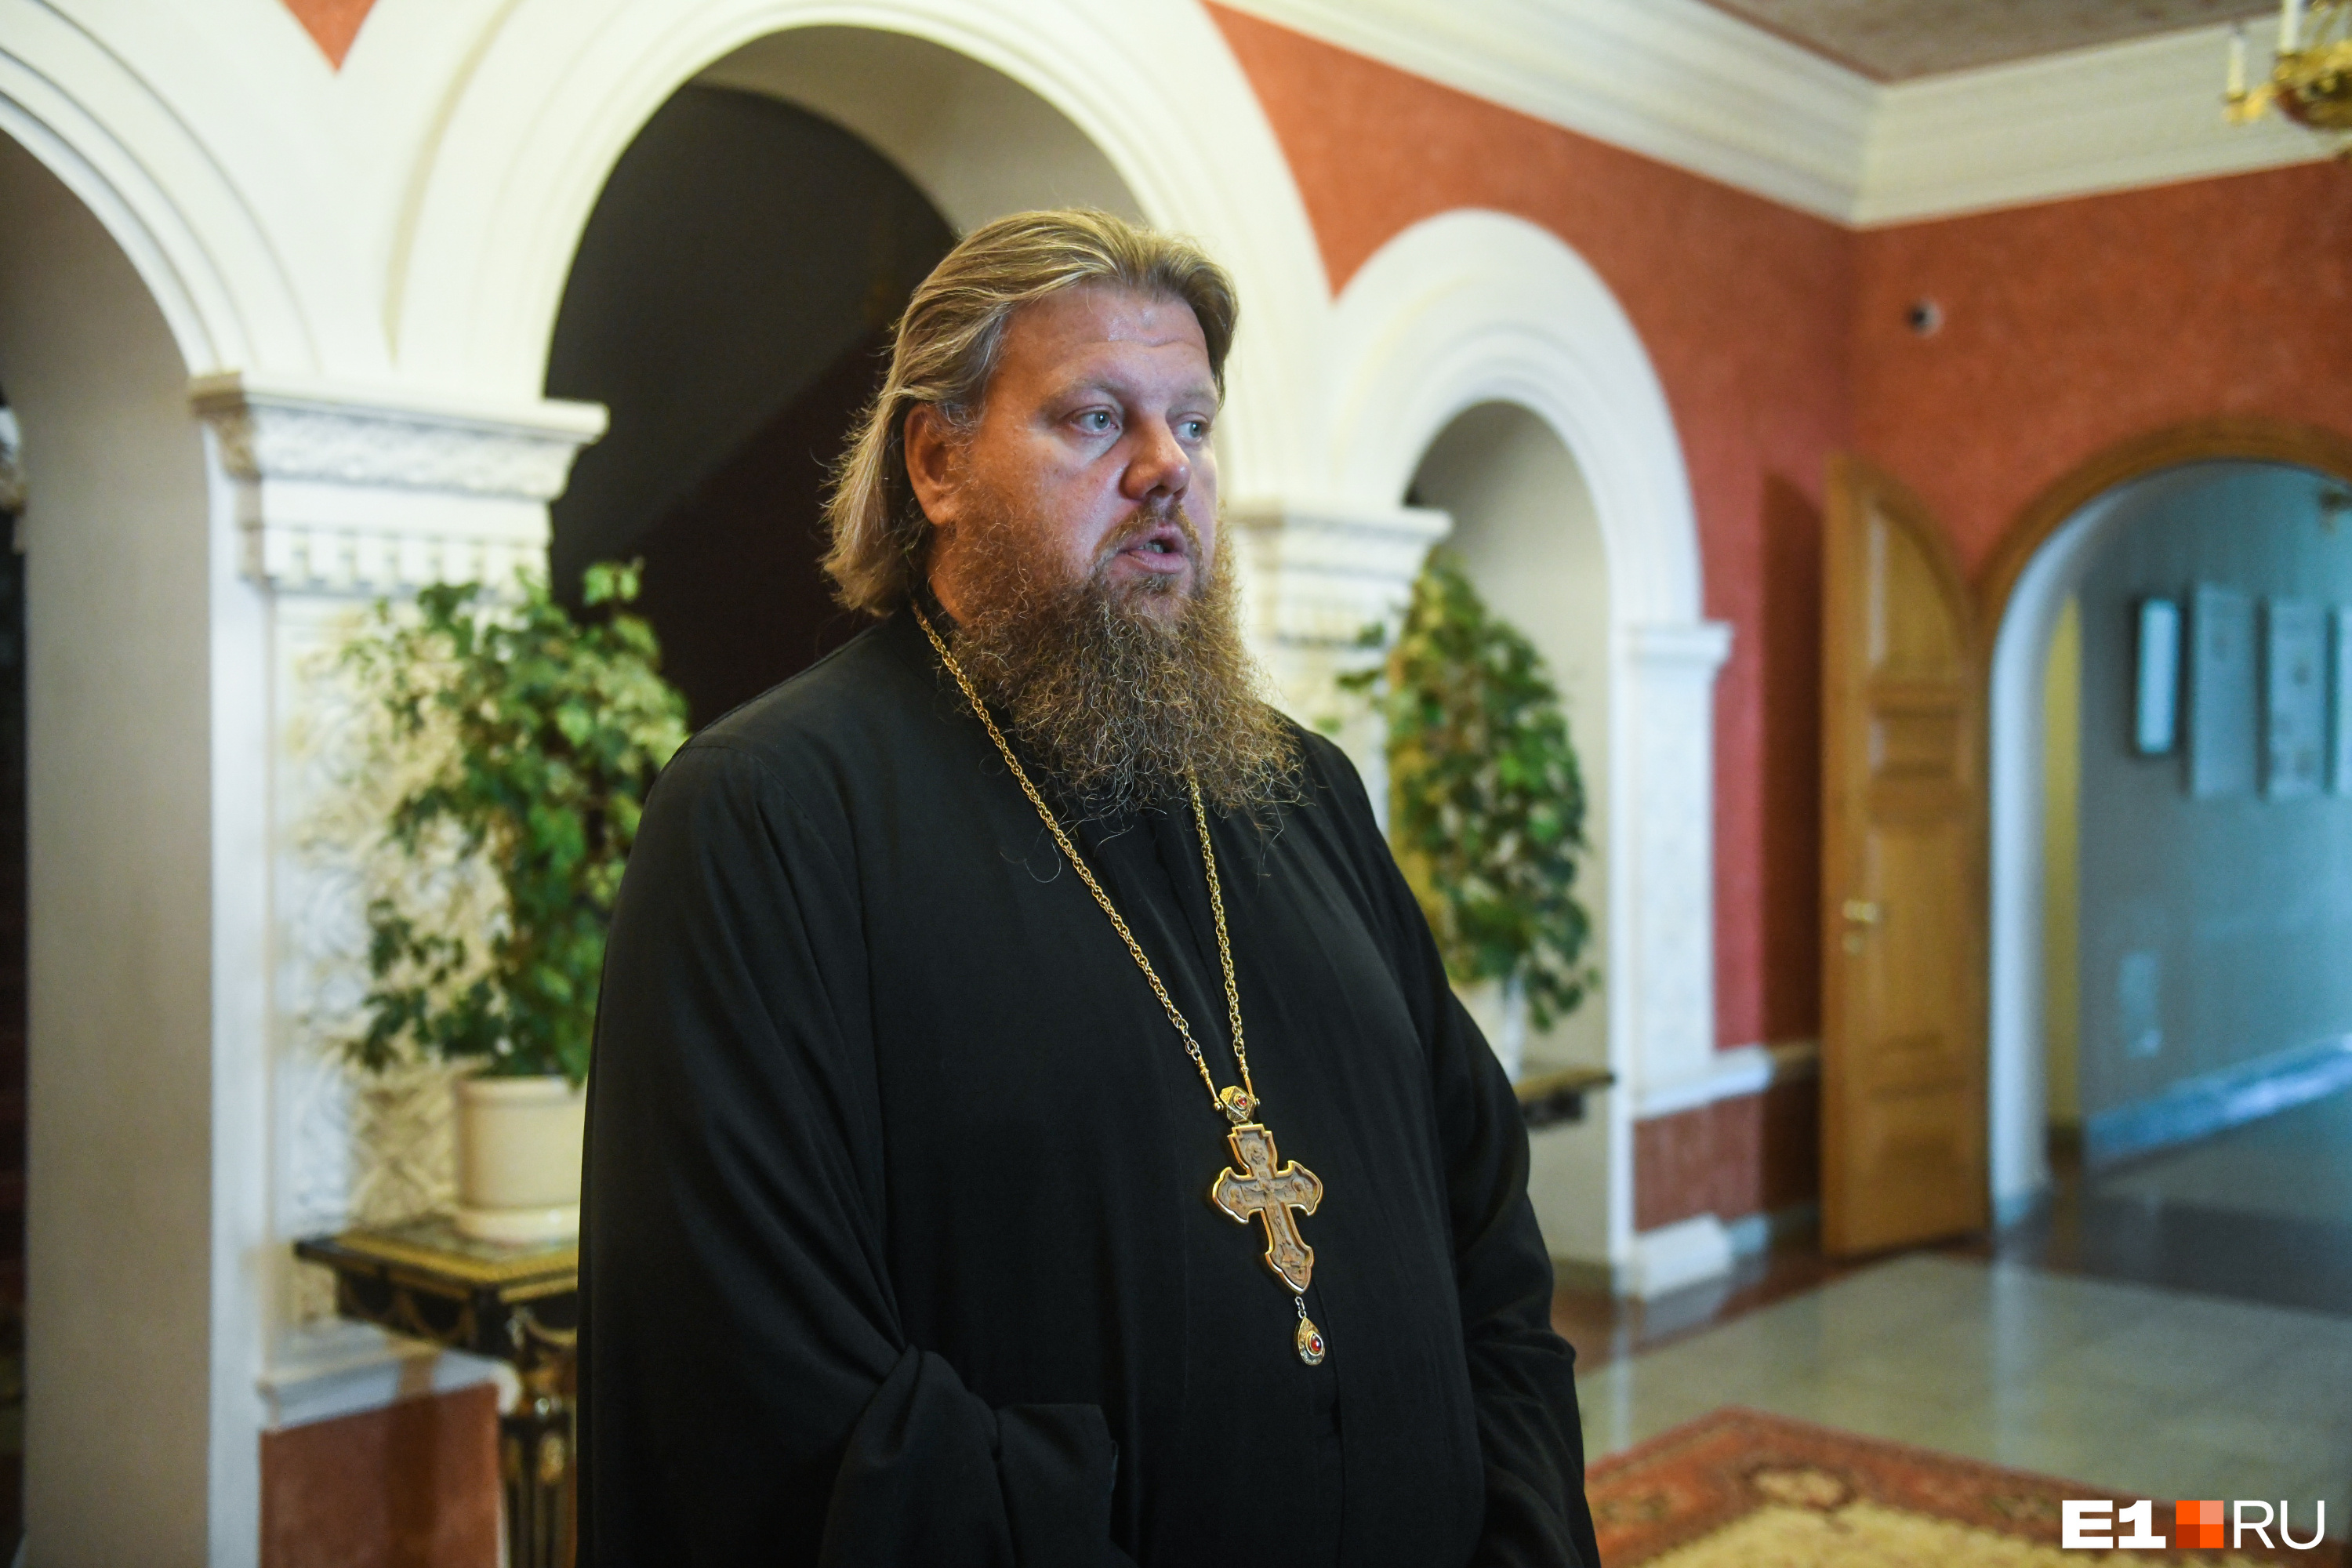 «Они занимают нашу землю». Уральский священник объяснил, зачем нужны мигранты